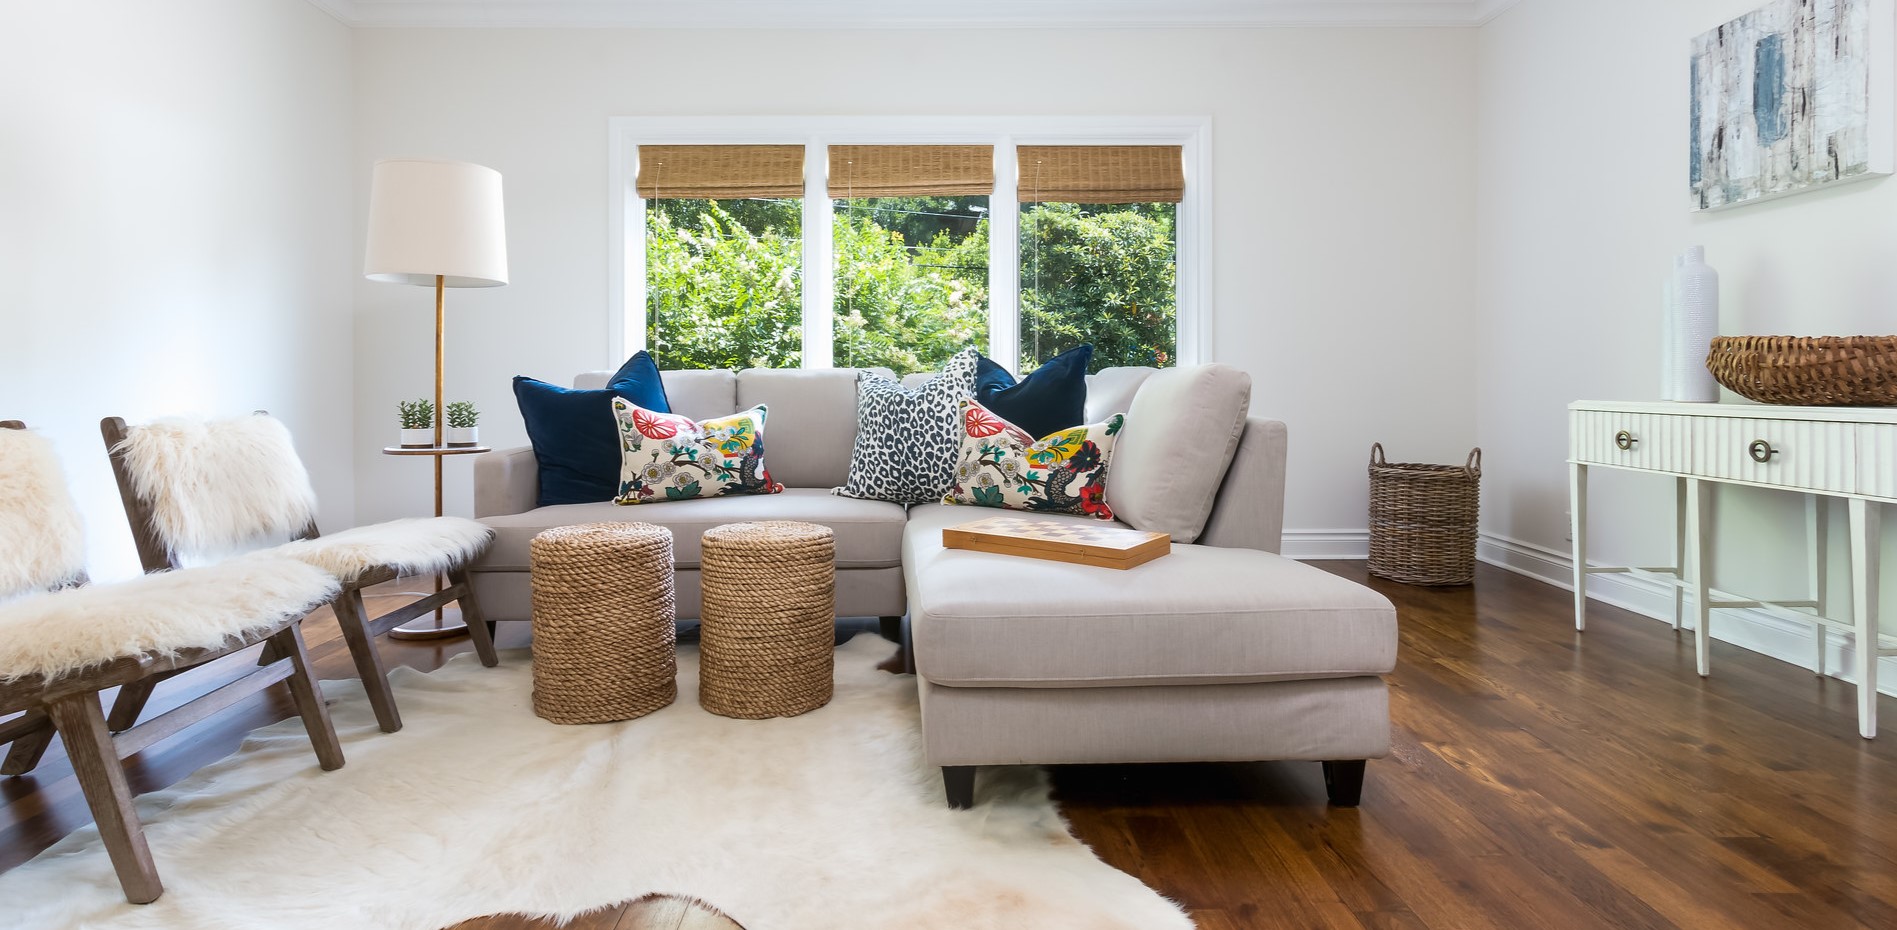 Угловой диван является удачным решением для современной квартиры-студии